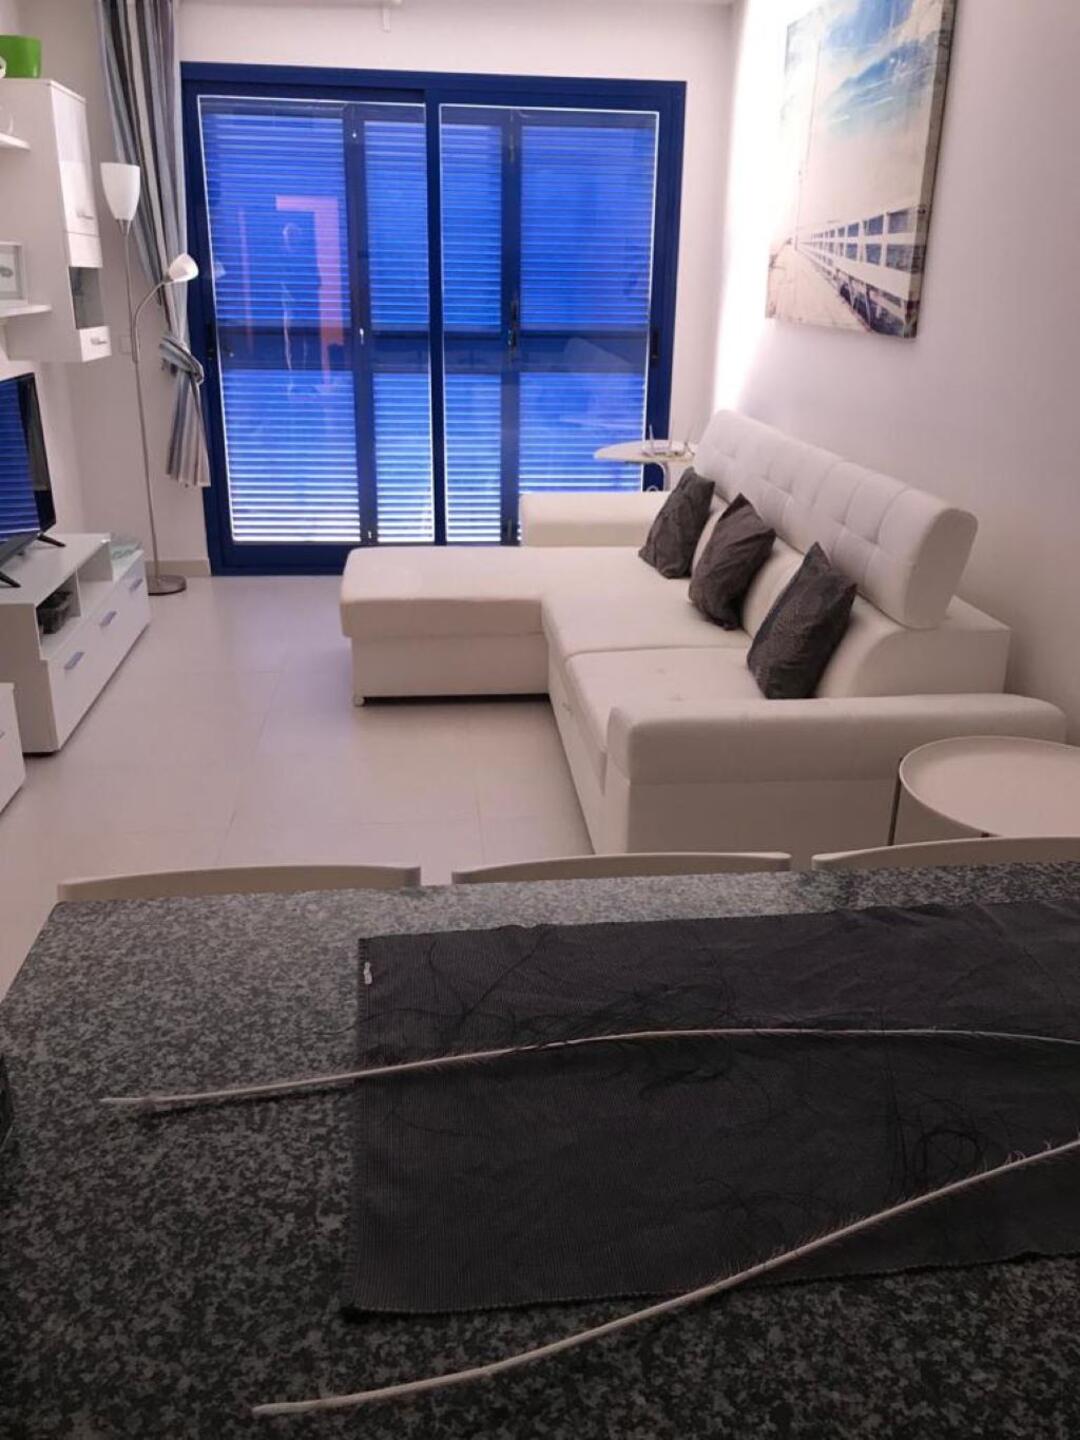 CPM 007 - ATALAYA STUDIO: Apartment for Sale in Mojácar, Almería